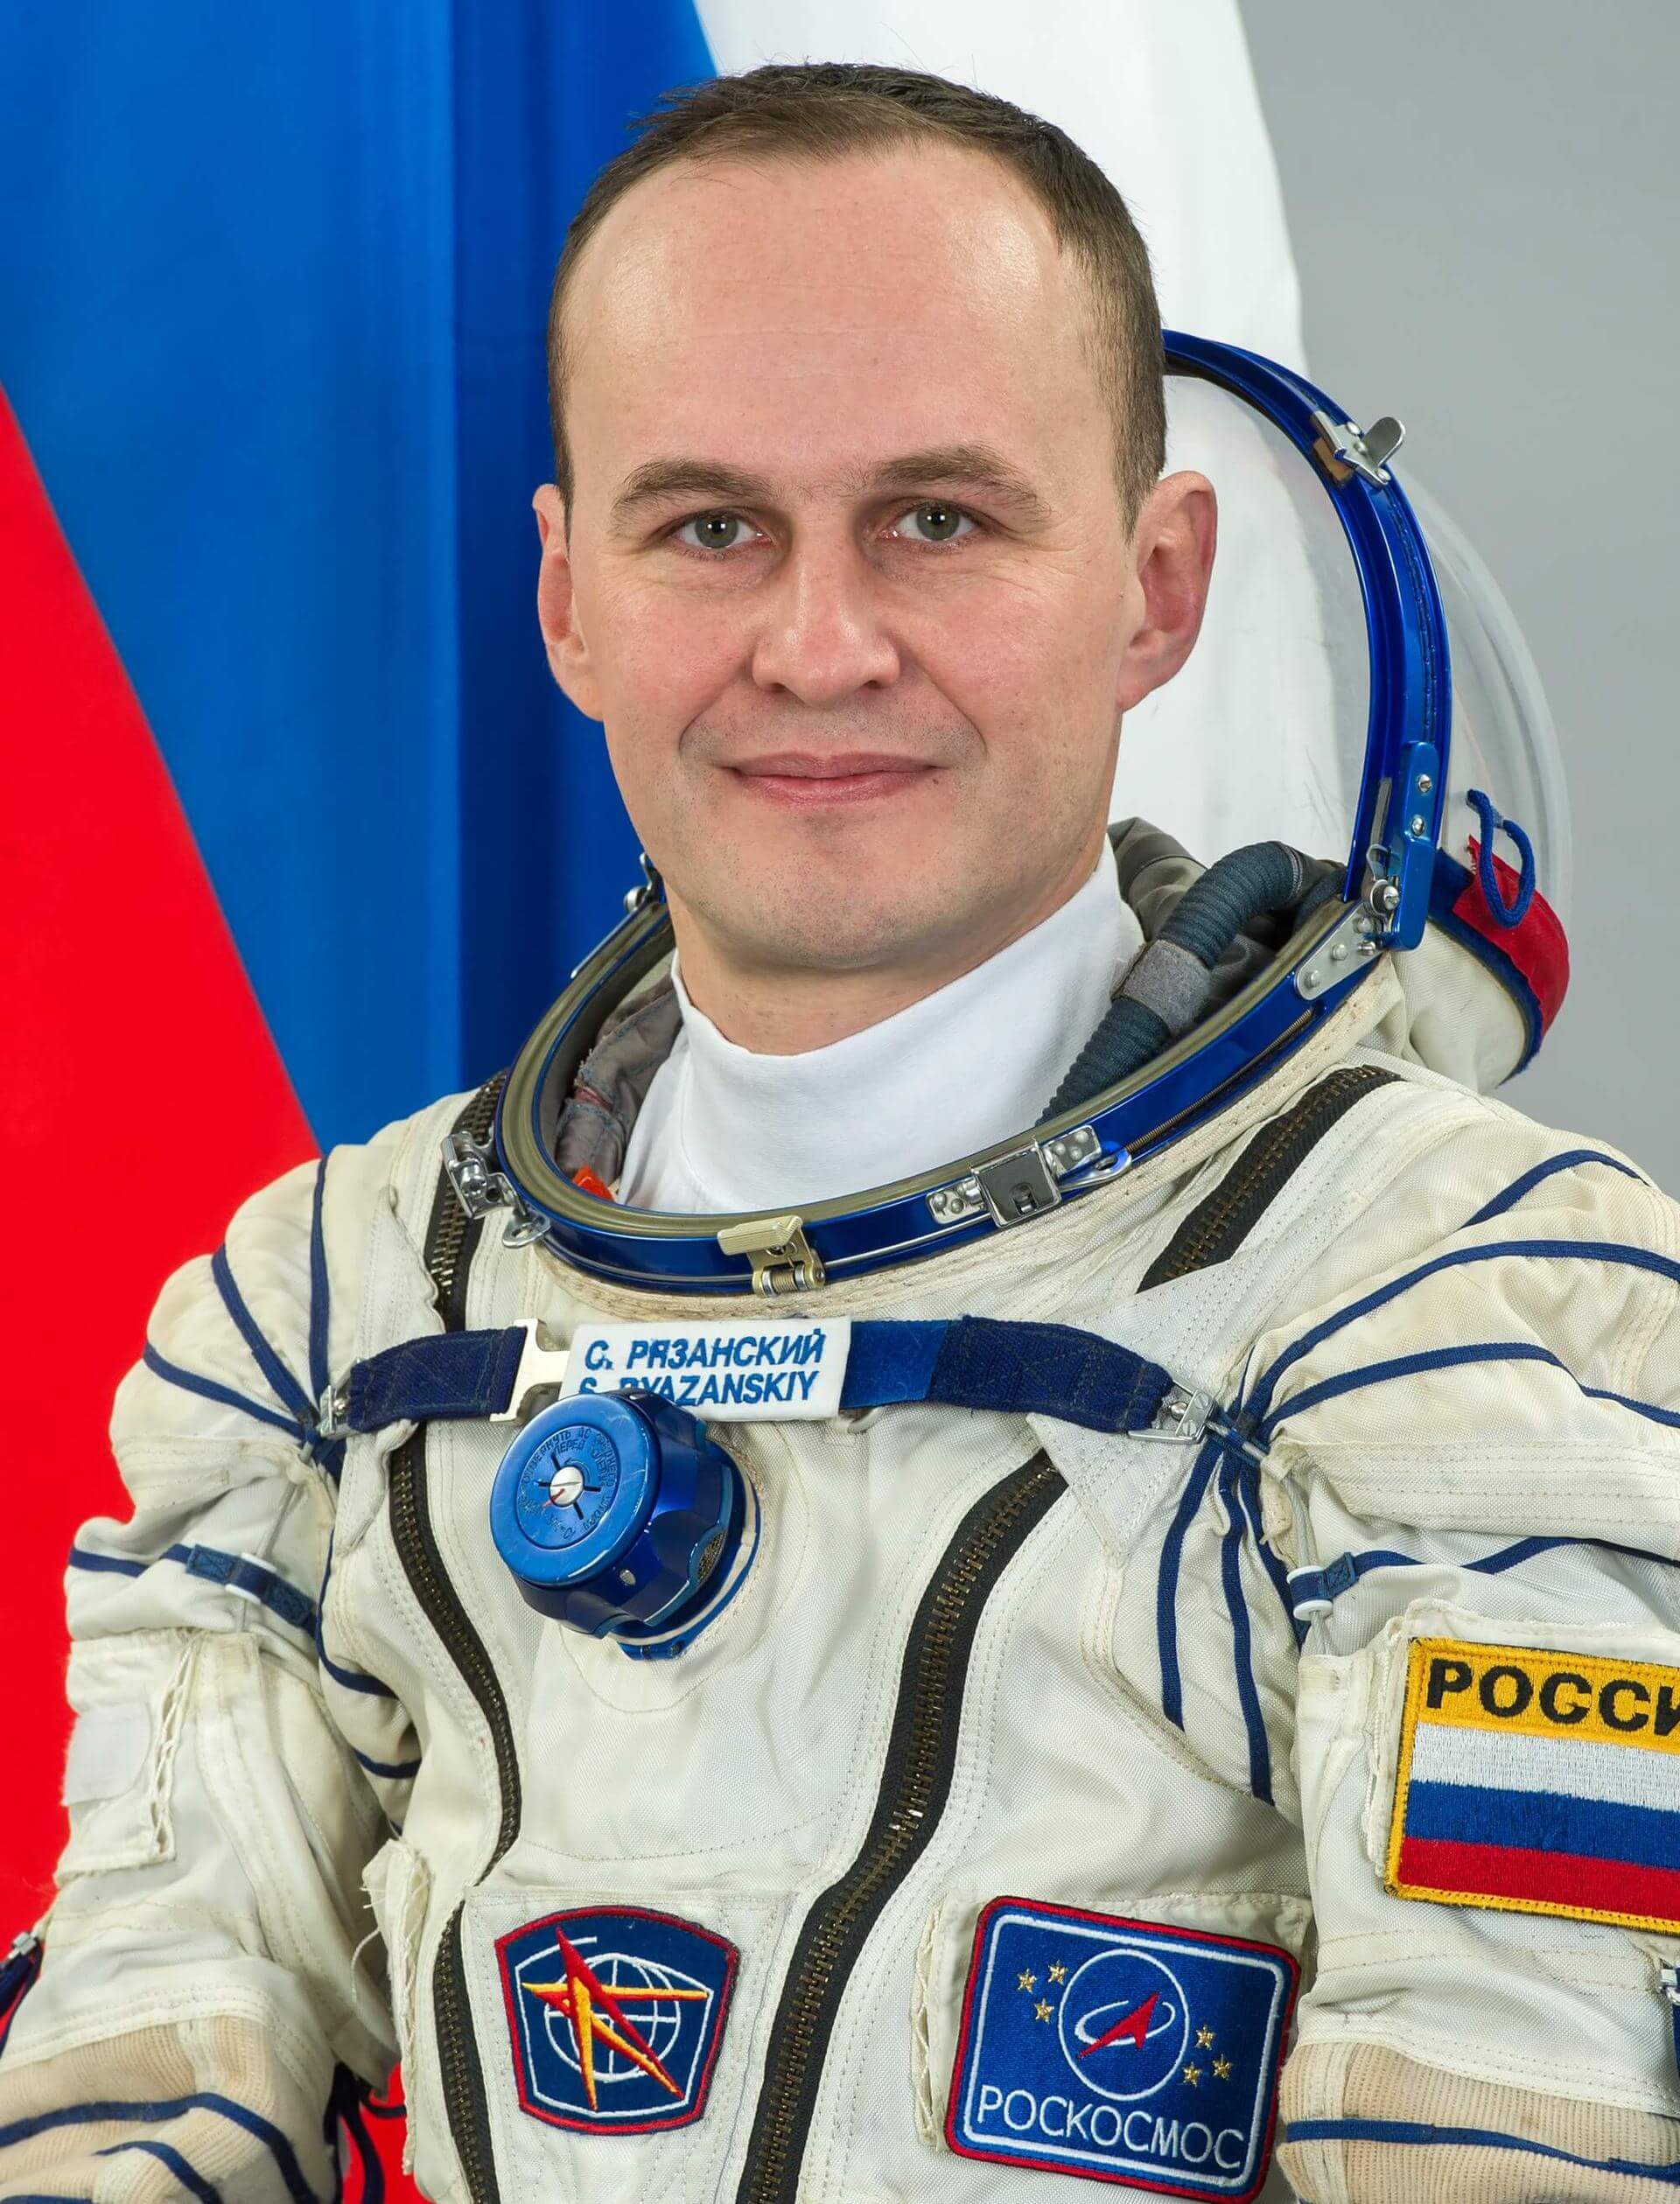 Sergey Ryazansky